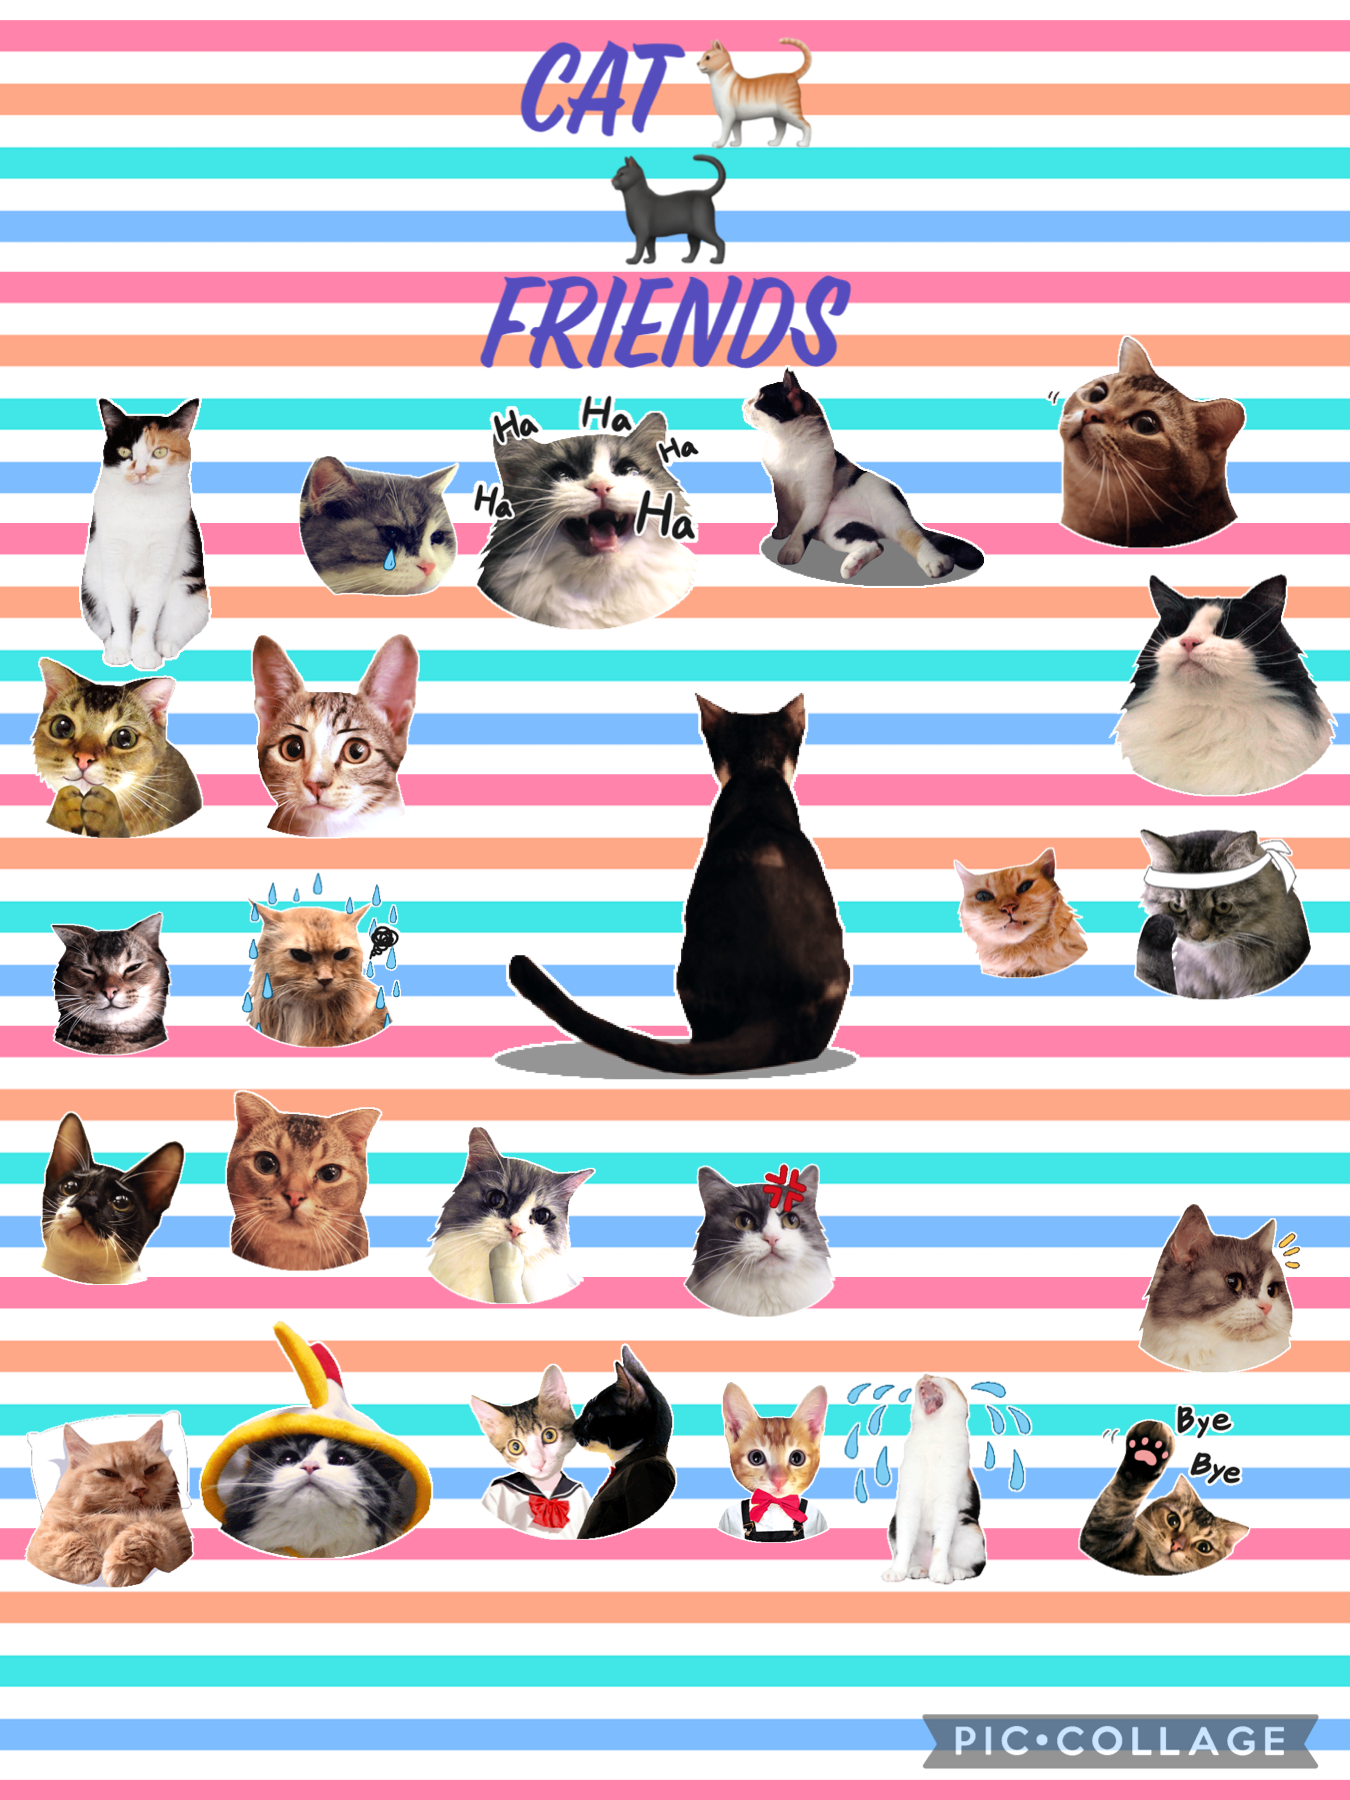 Cat friends